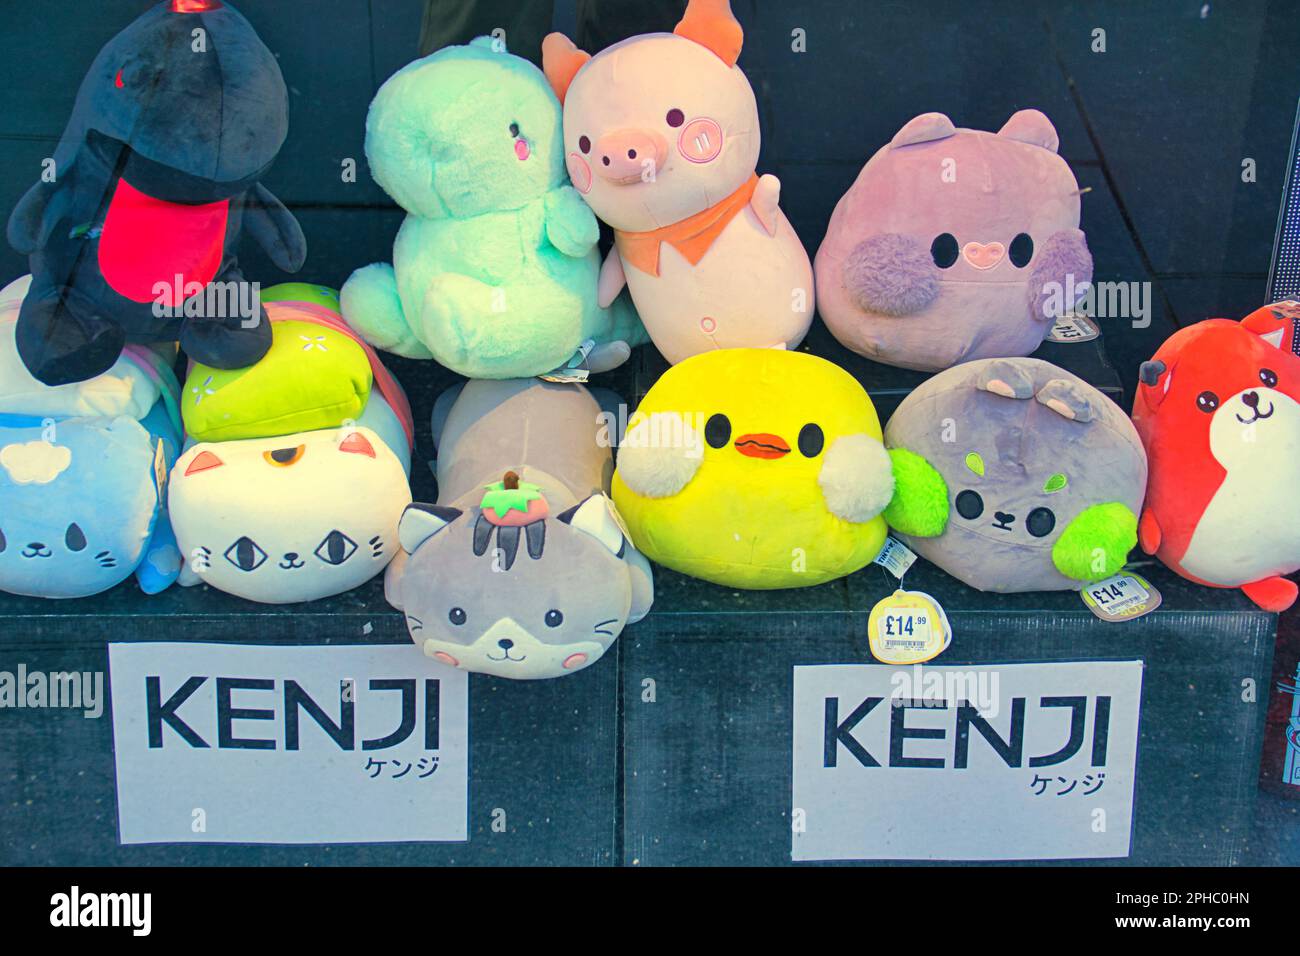 kenji plouhie les jouets dans la fenêtre du magasin avec l'enseigne japonaise Banque D'Images